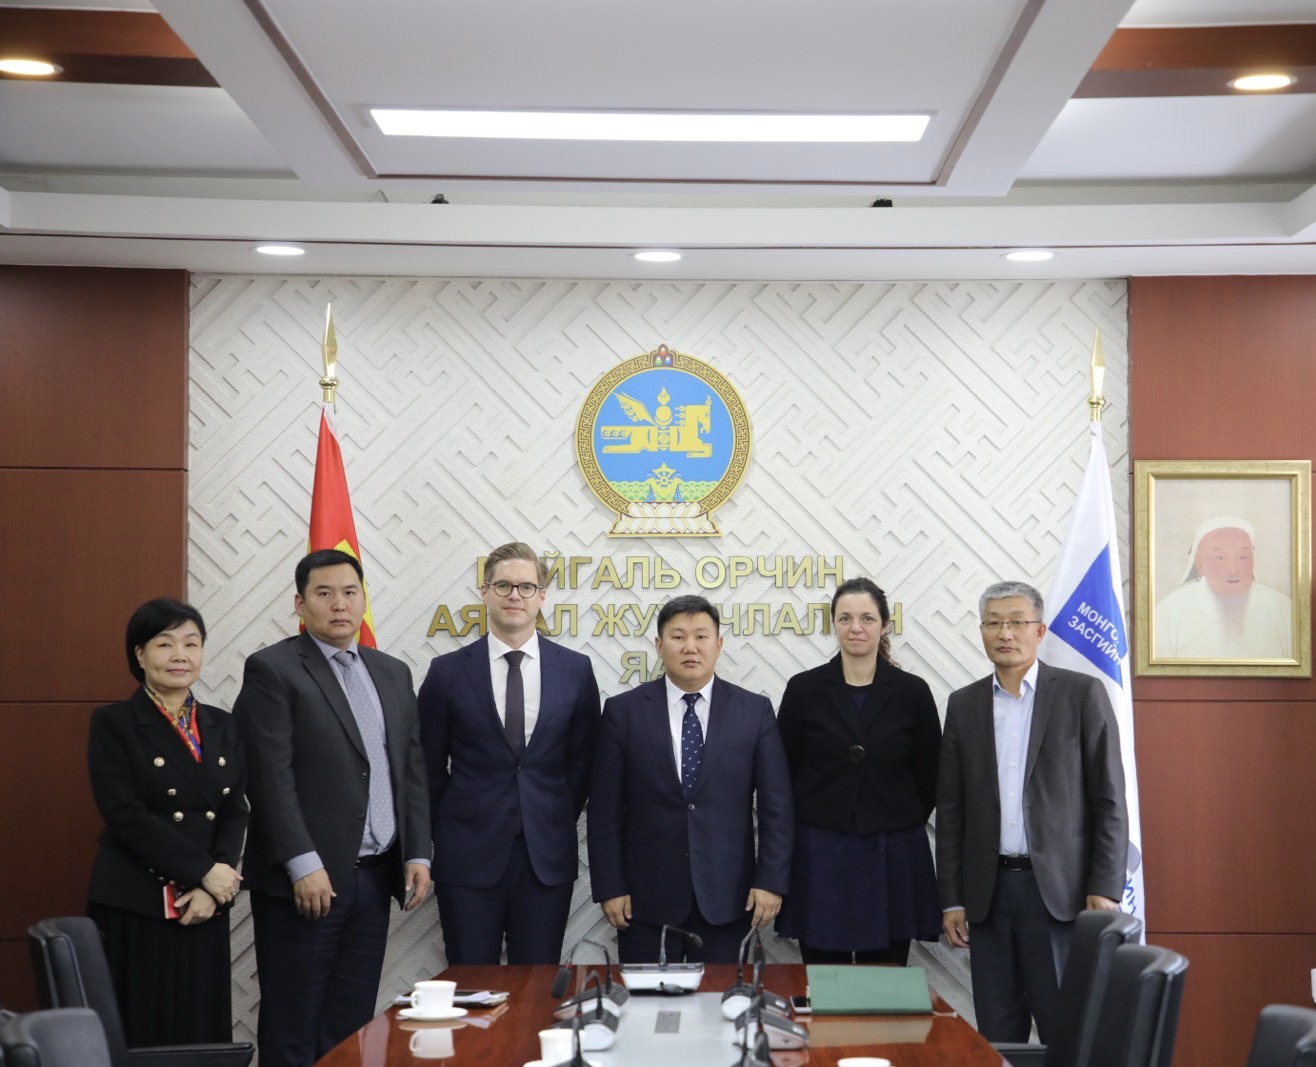 Дэлхийн оюуны өмчийн байгууллагын зөвлөхүүд Монгол Улсад ажиллаж байна